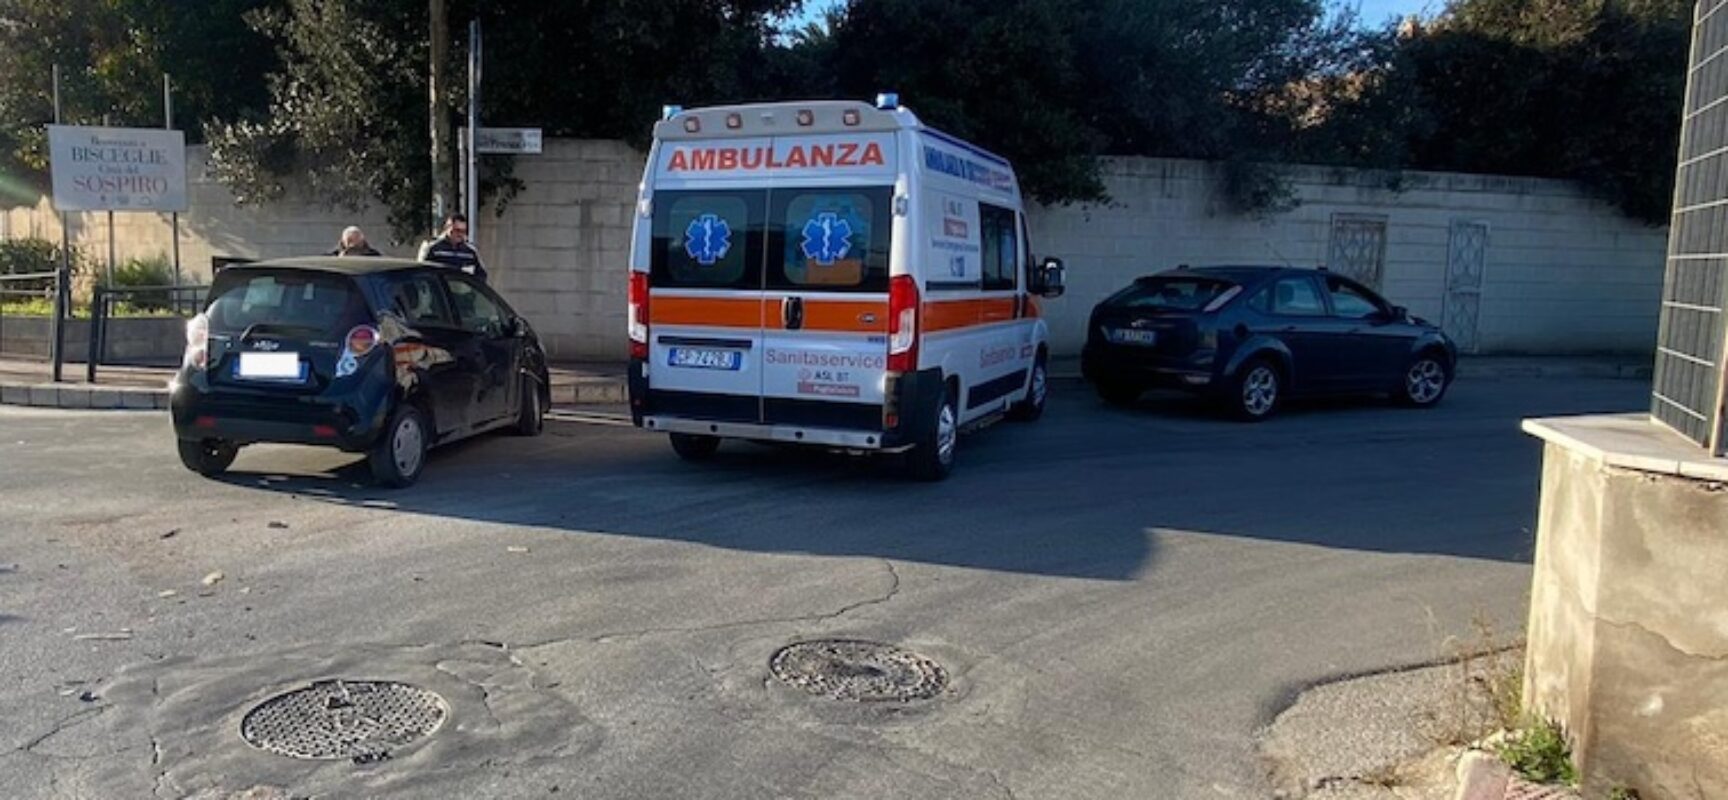 Incidente su rotatoria in via Imbriani: un ferito in ospedale